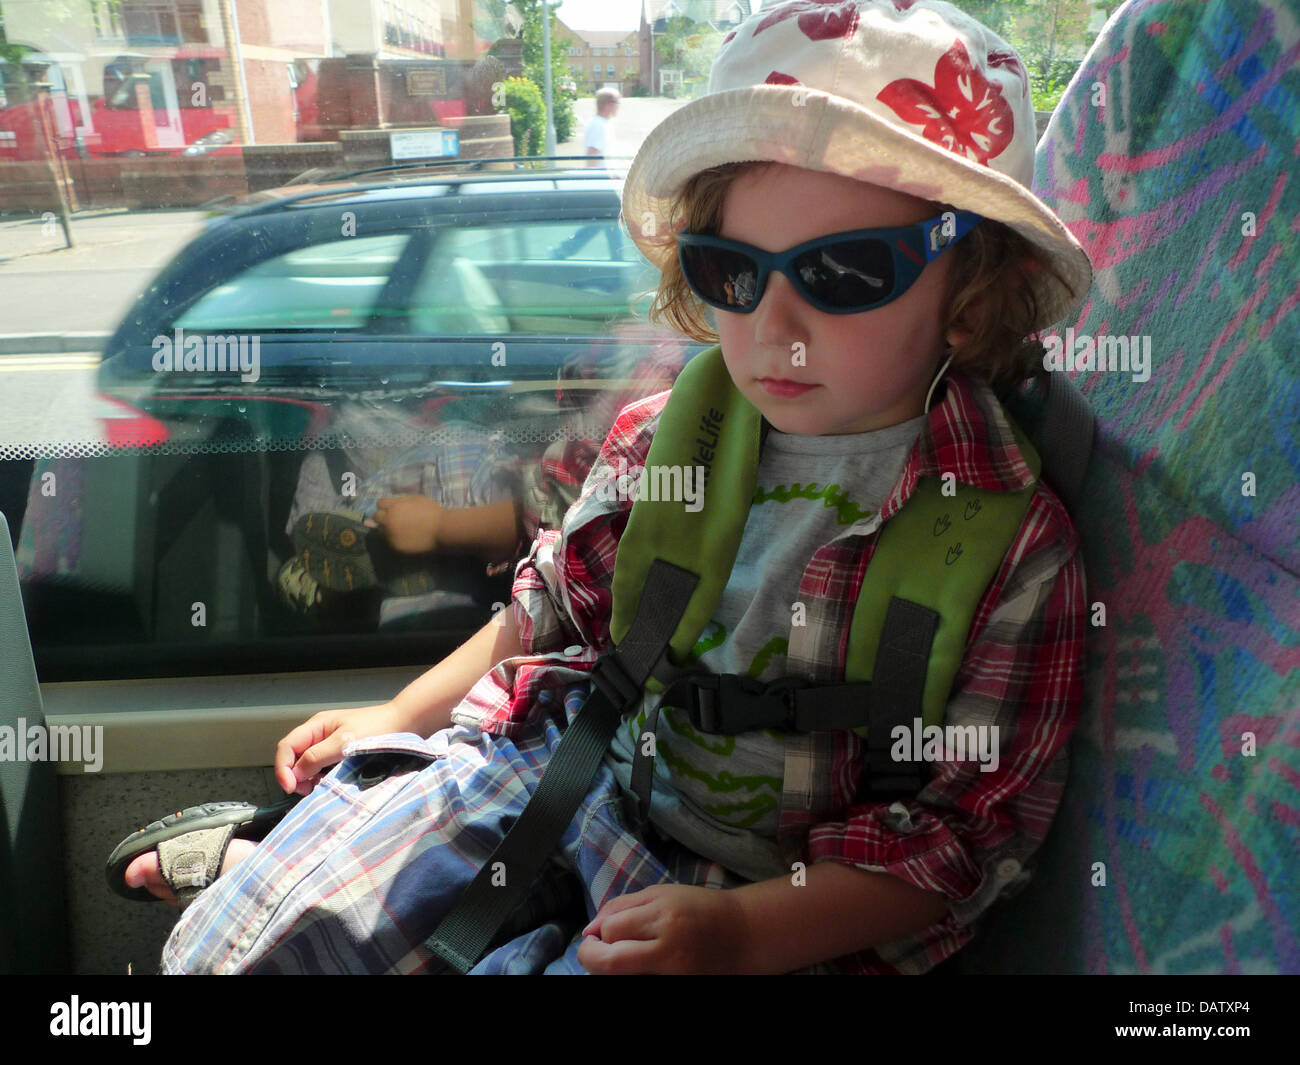 18 luglio 2013 ragazzo di età compresa tra i 3 su un viaggio in autobus a guardare e staying cool nella soffocante livello UK 3 ondata di caldo avviso. Kathy deWitt/Alamy Live News Foto Stock